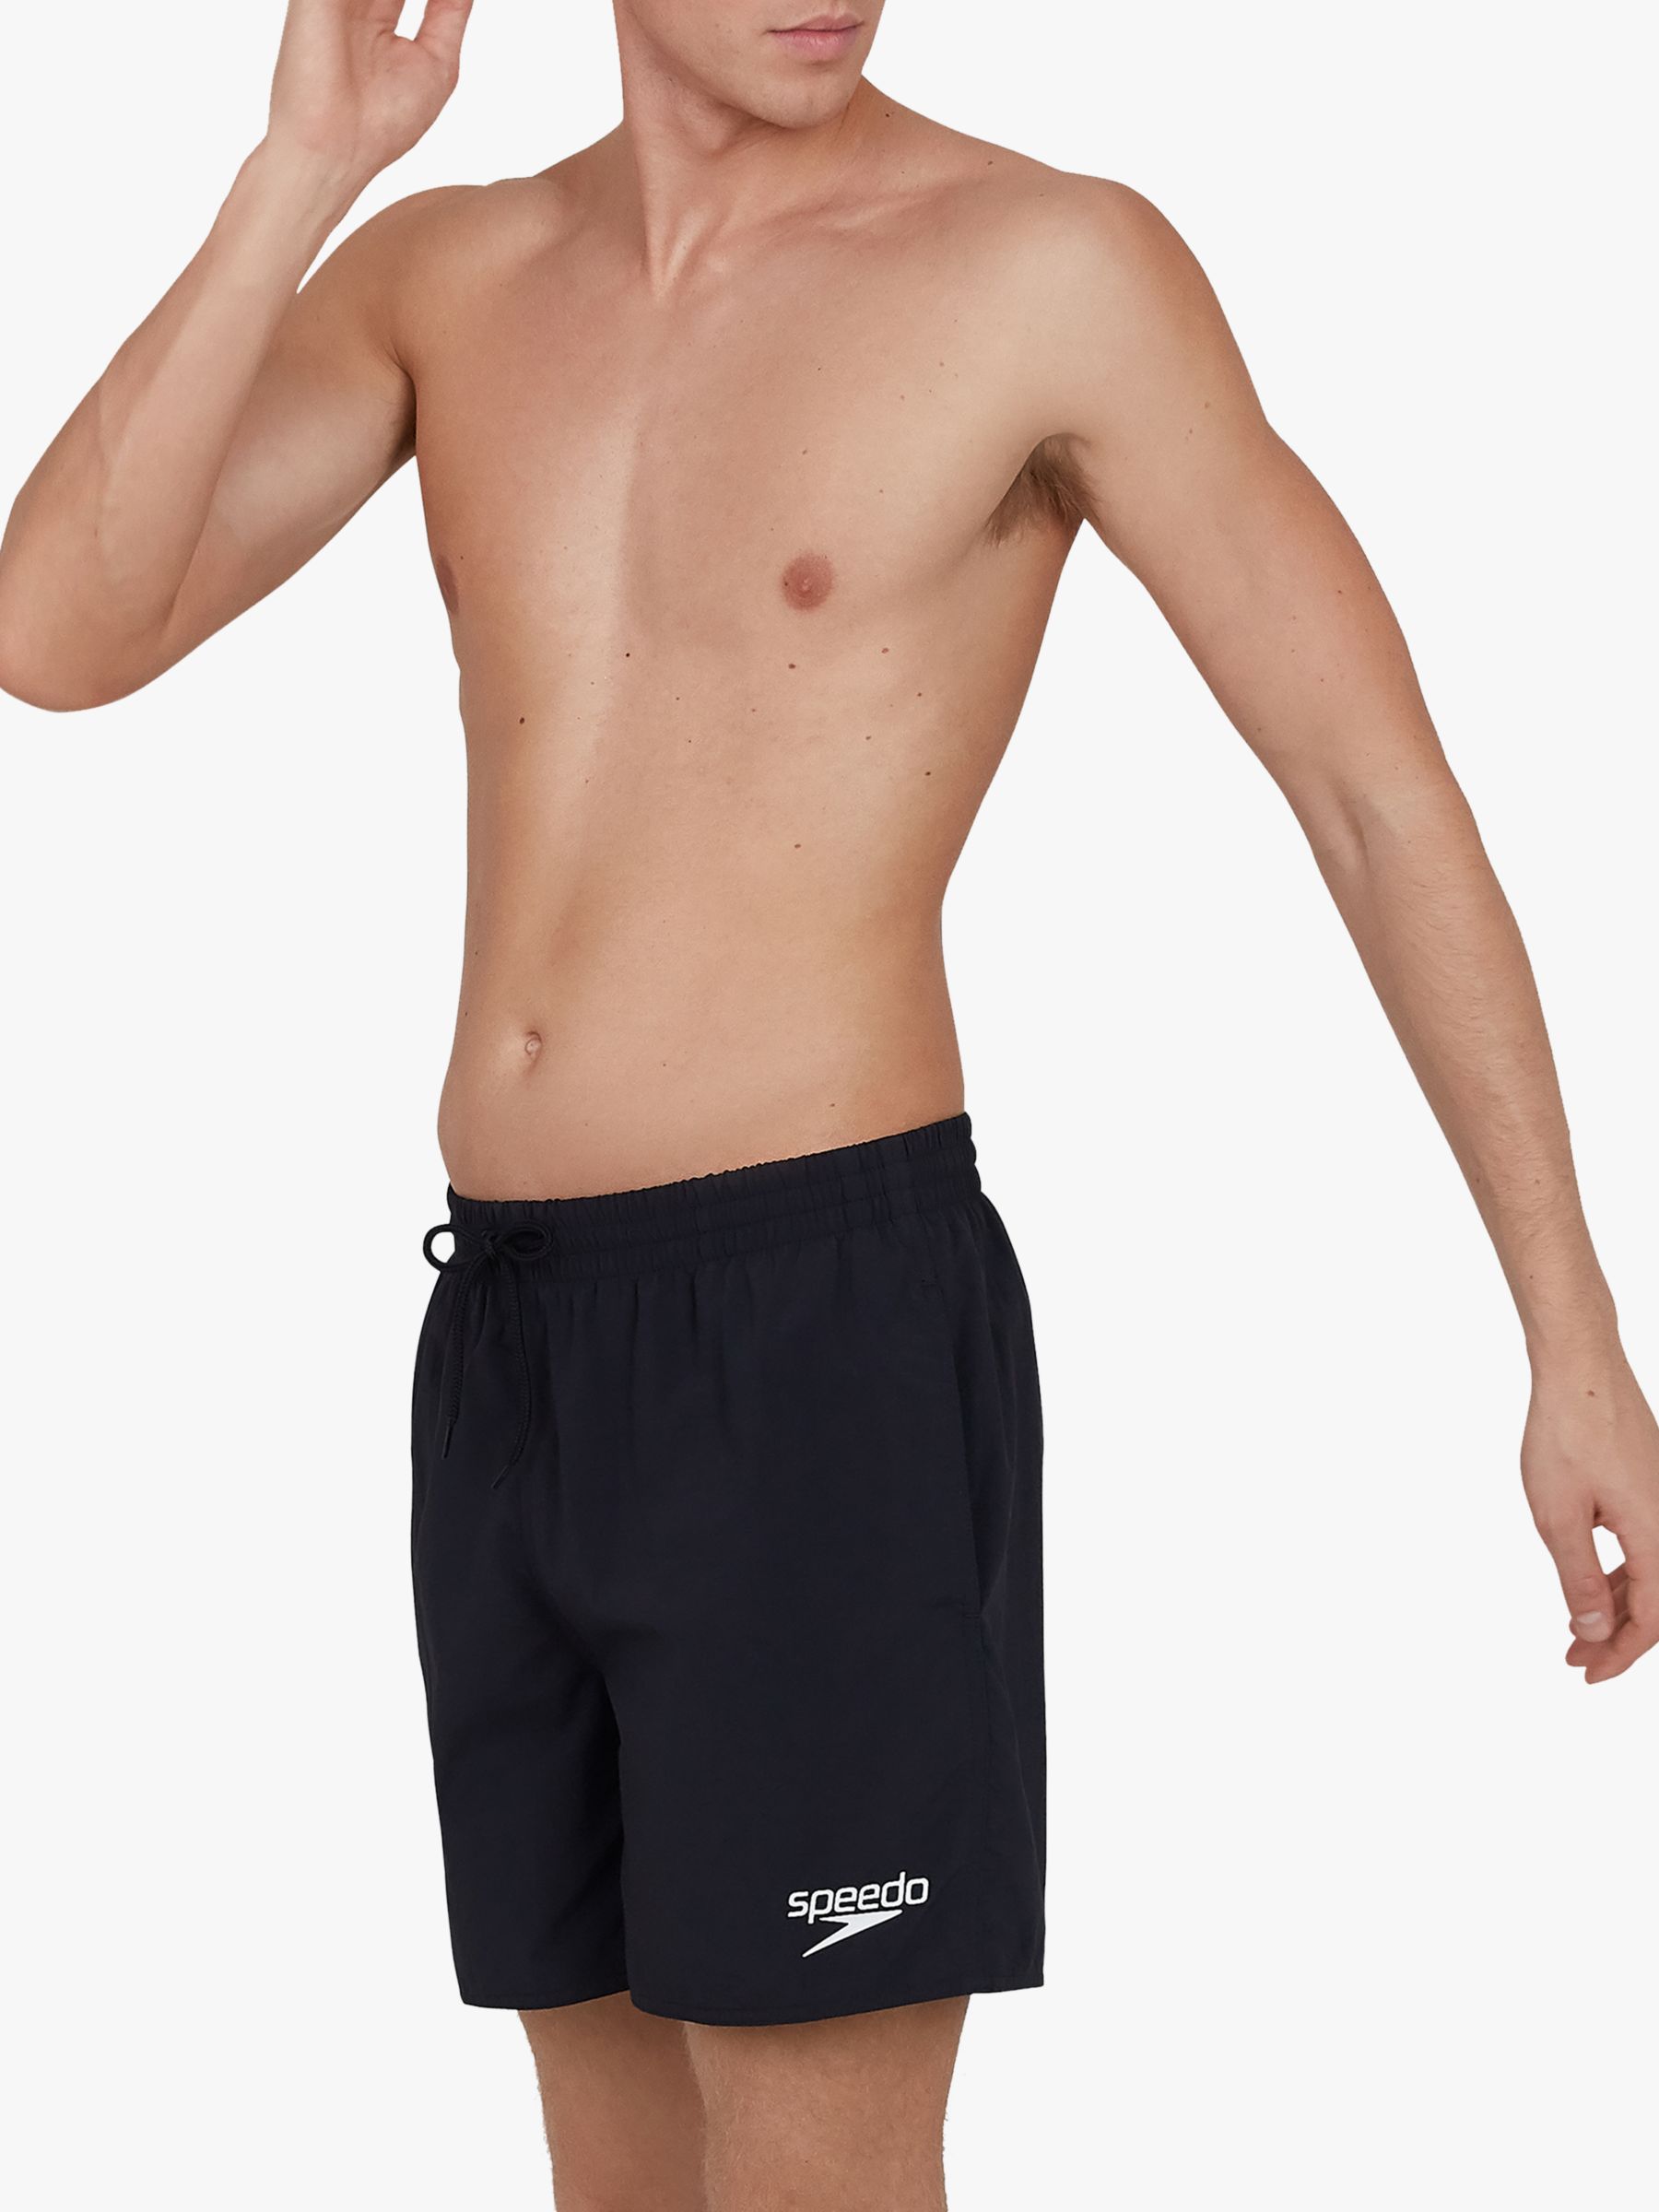 Speedo Essentials 16" Swim Shorts, Black, S